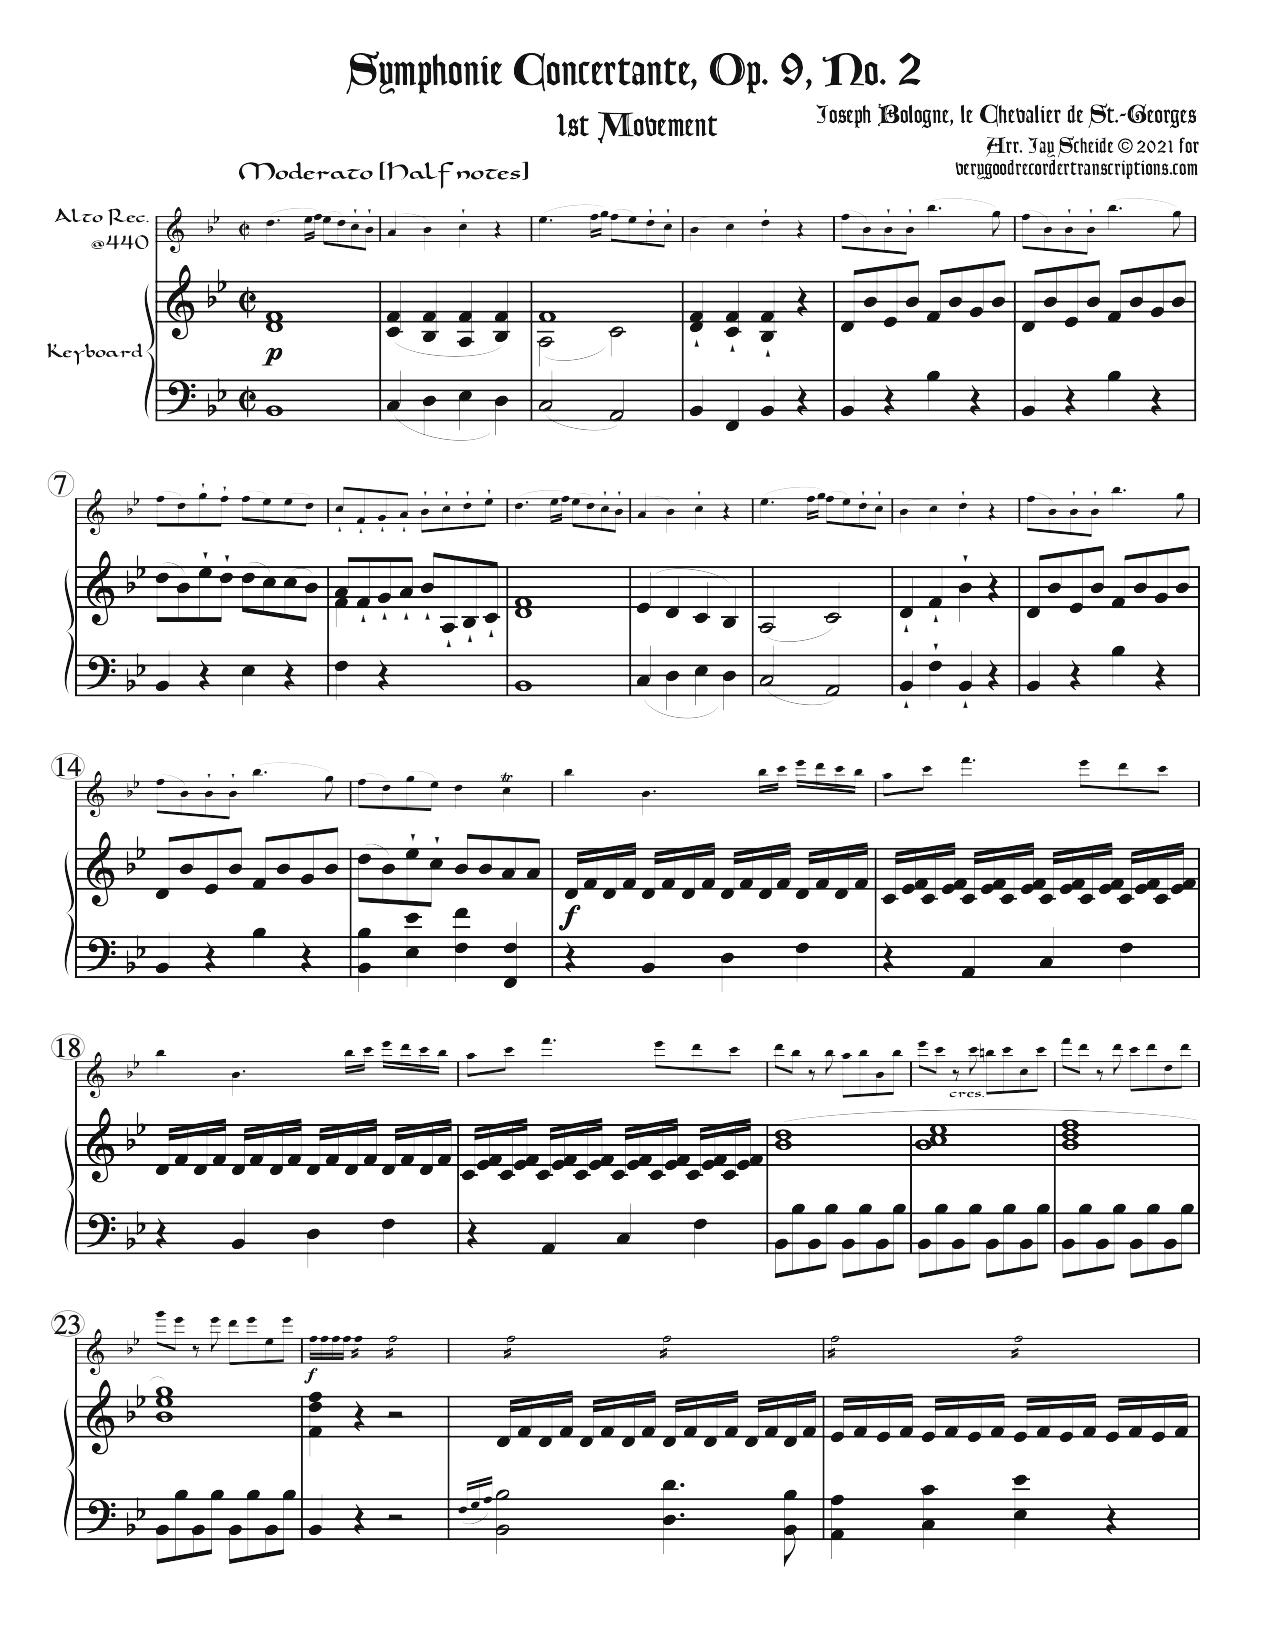 Sinfonia Concertante, Op. 9, No. 2